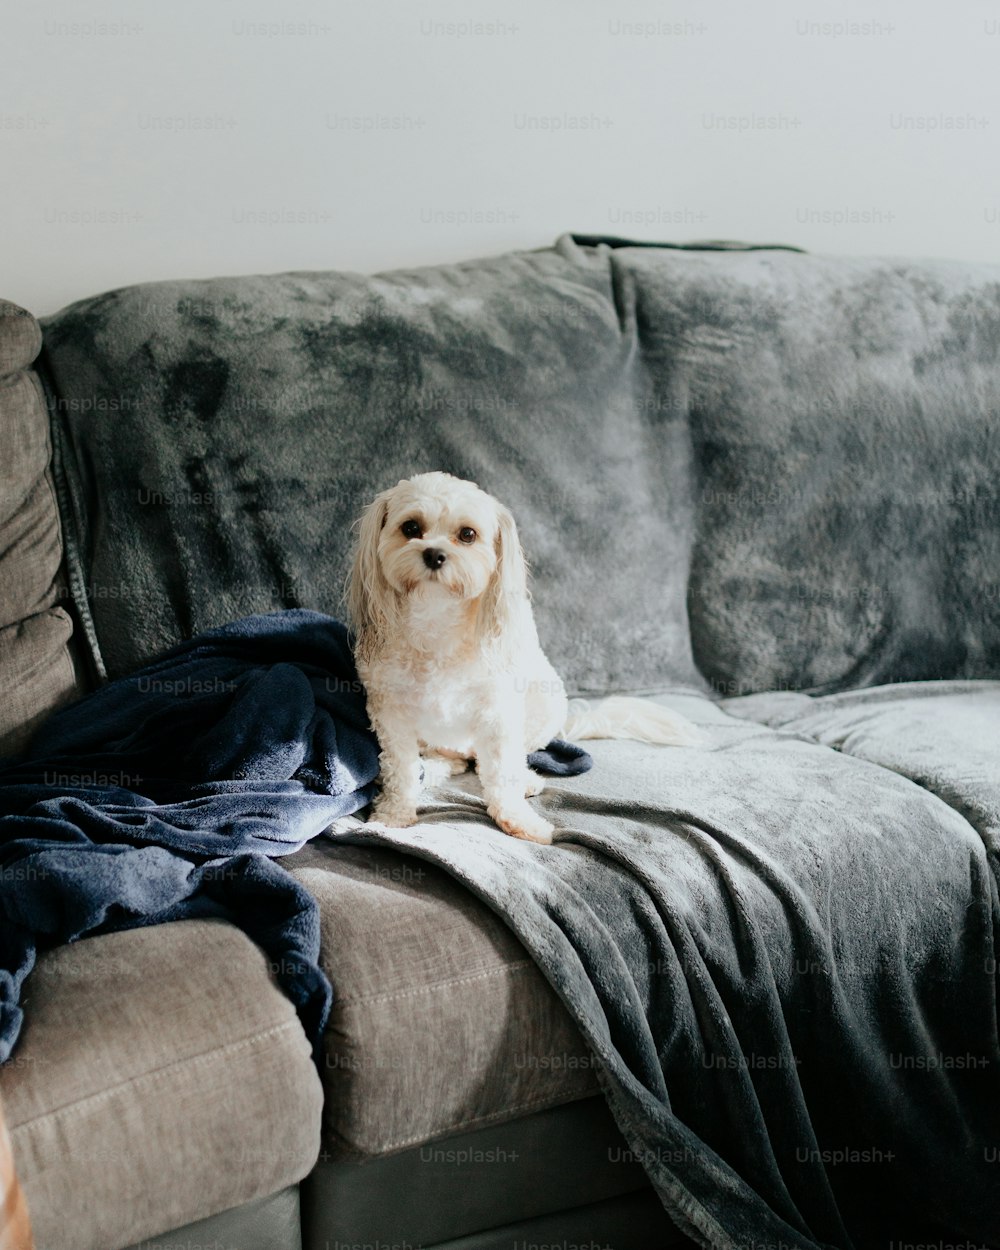 Un perro sentado en un sofá con una manta